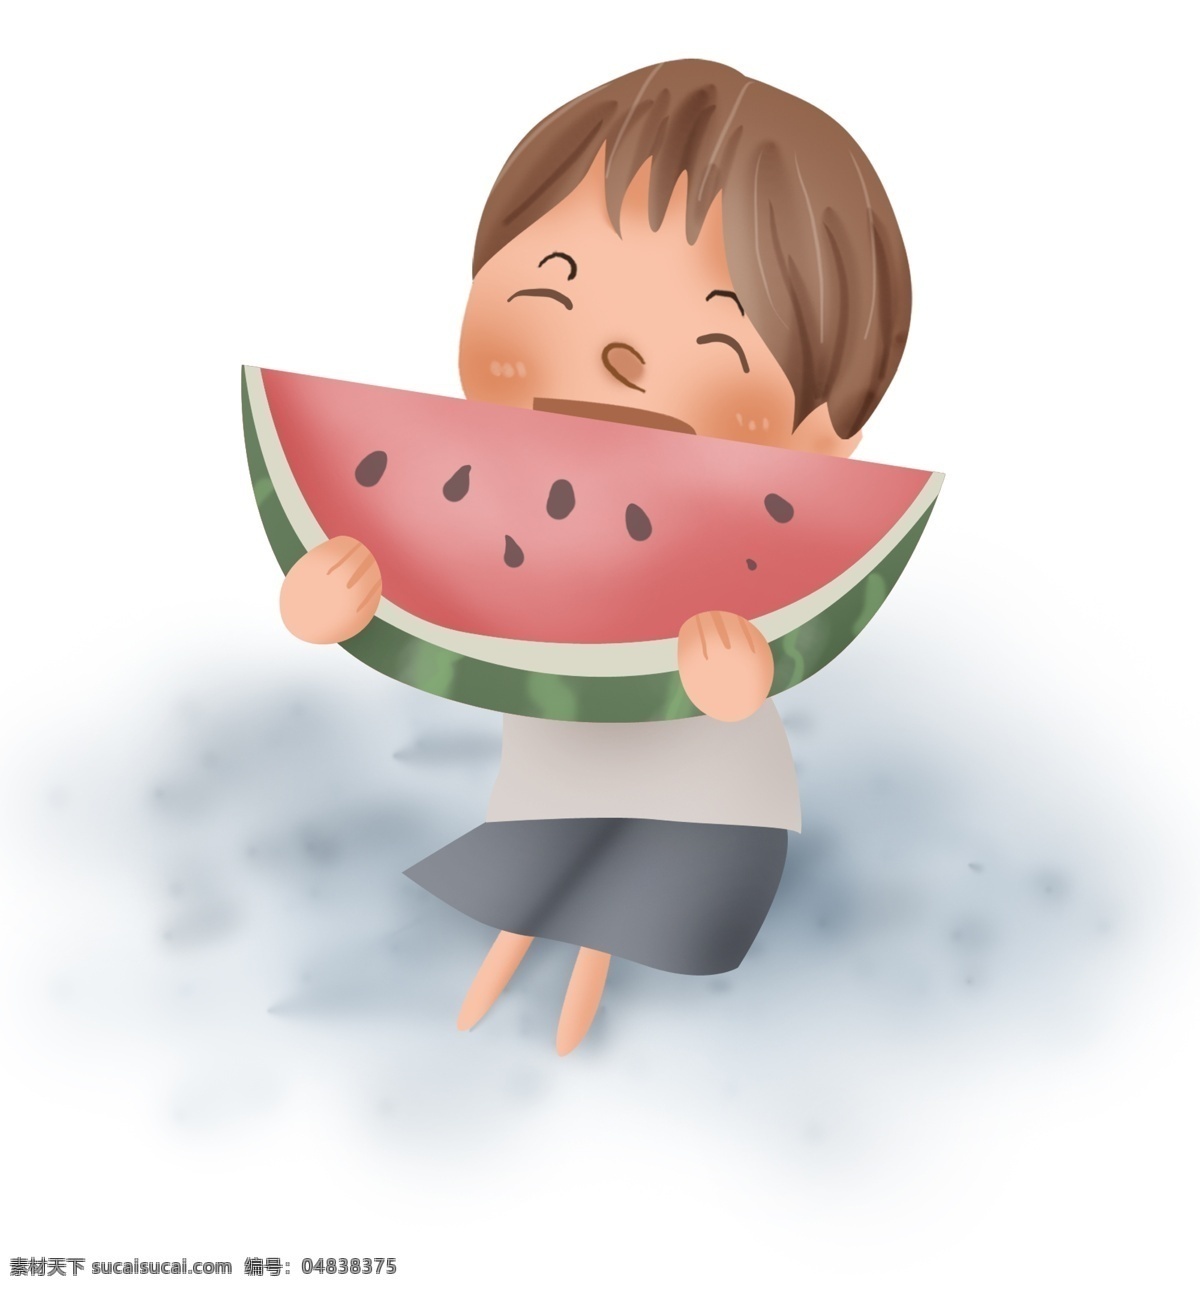 夏季 吃 西瓜 小 男孩 解暑水果 小暑 入夏 大暑 炎热 幼儿园 儿童 吃西瓜 瓜果